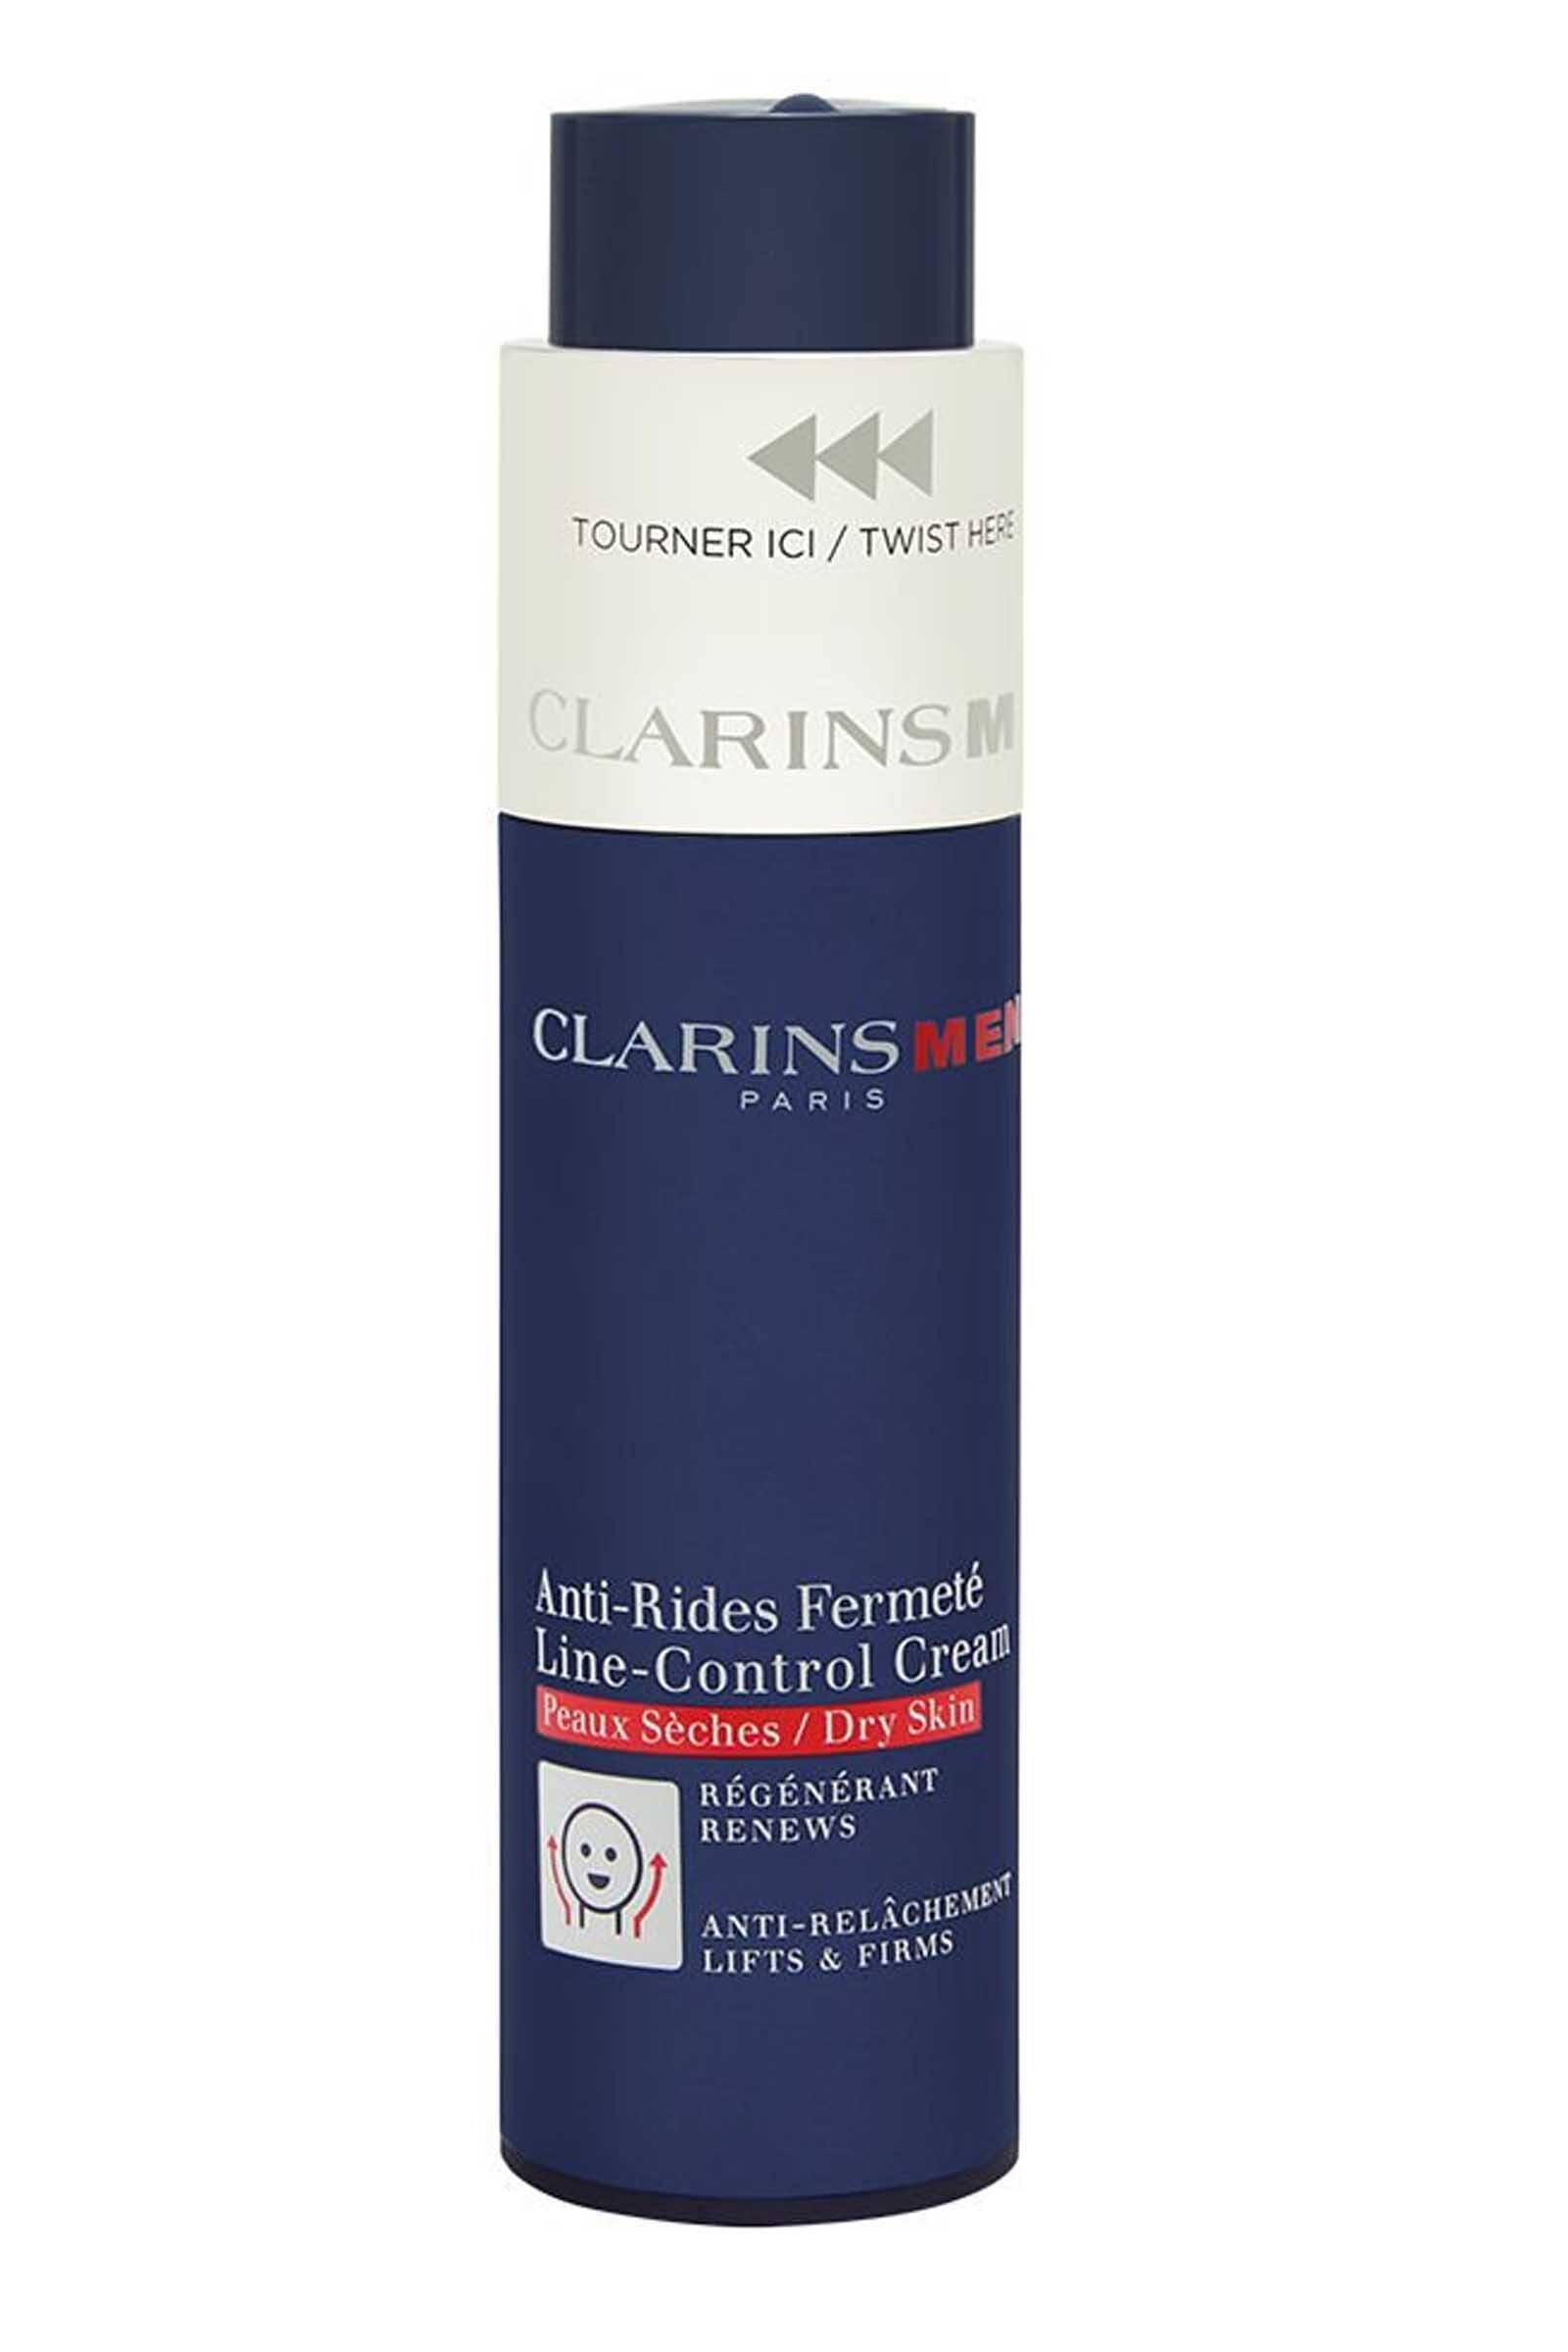 Clarins Men Line-Control Cream 50 ml